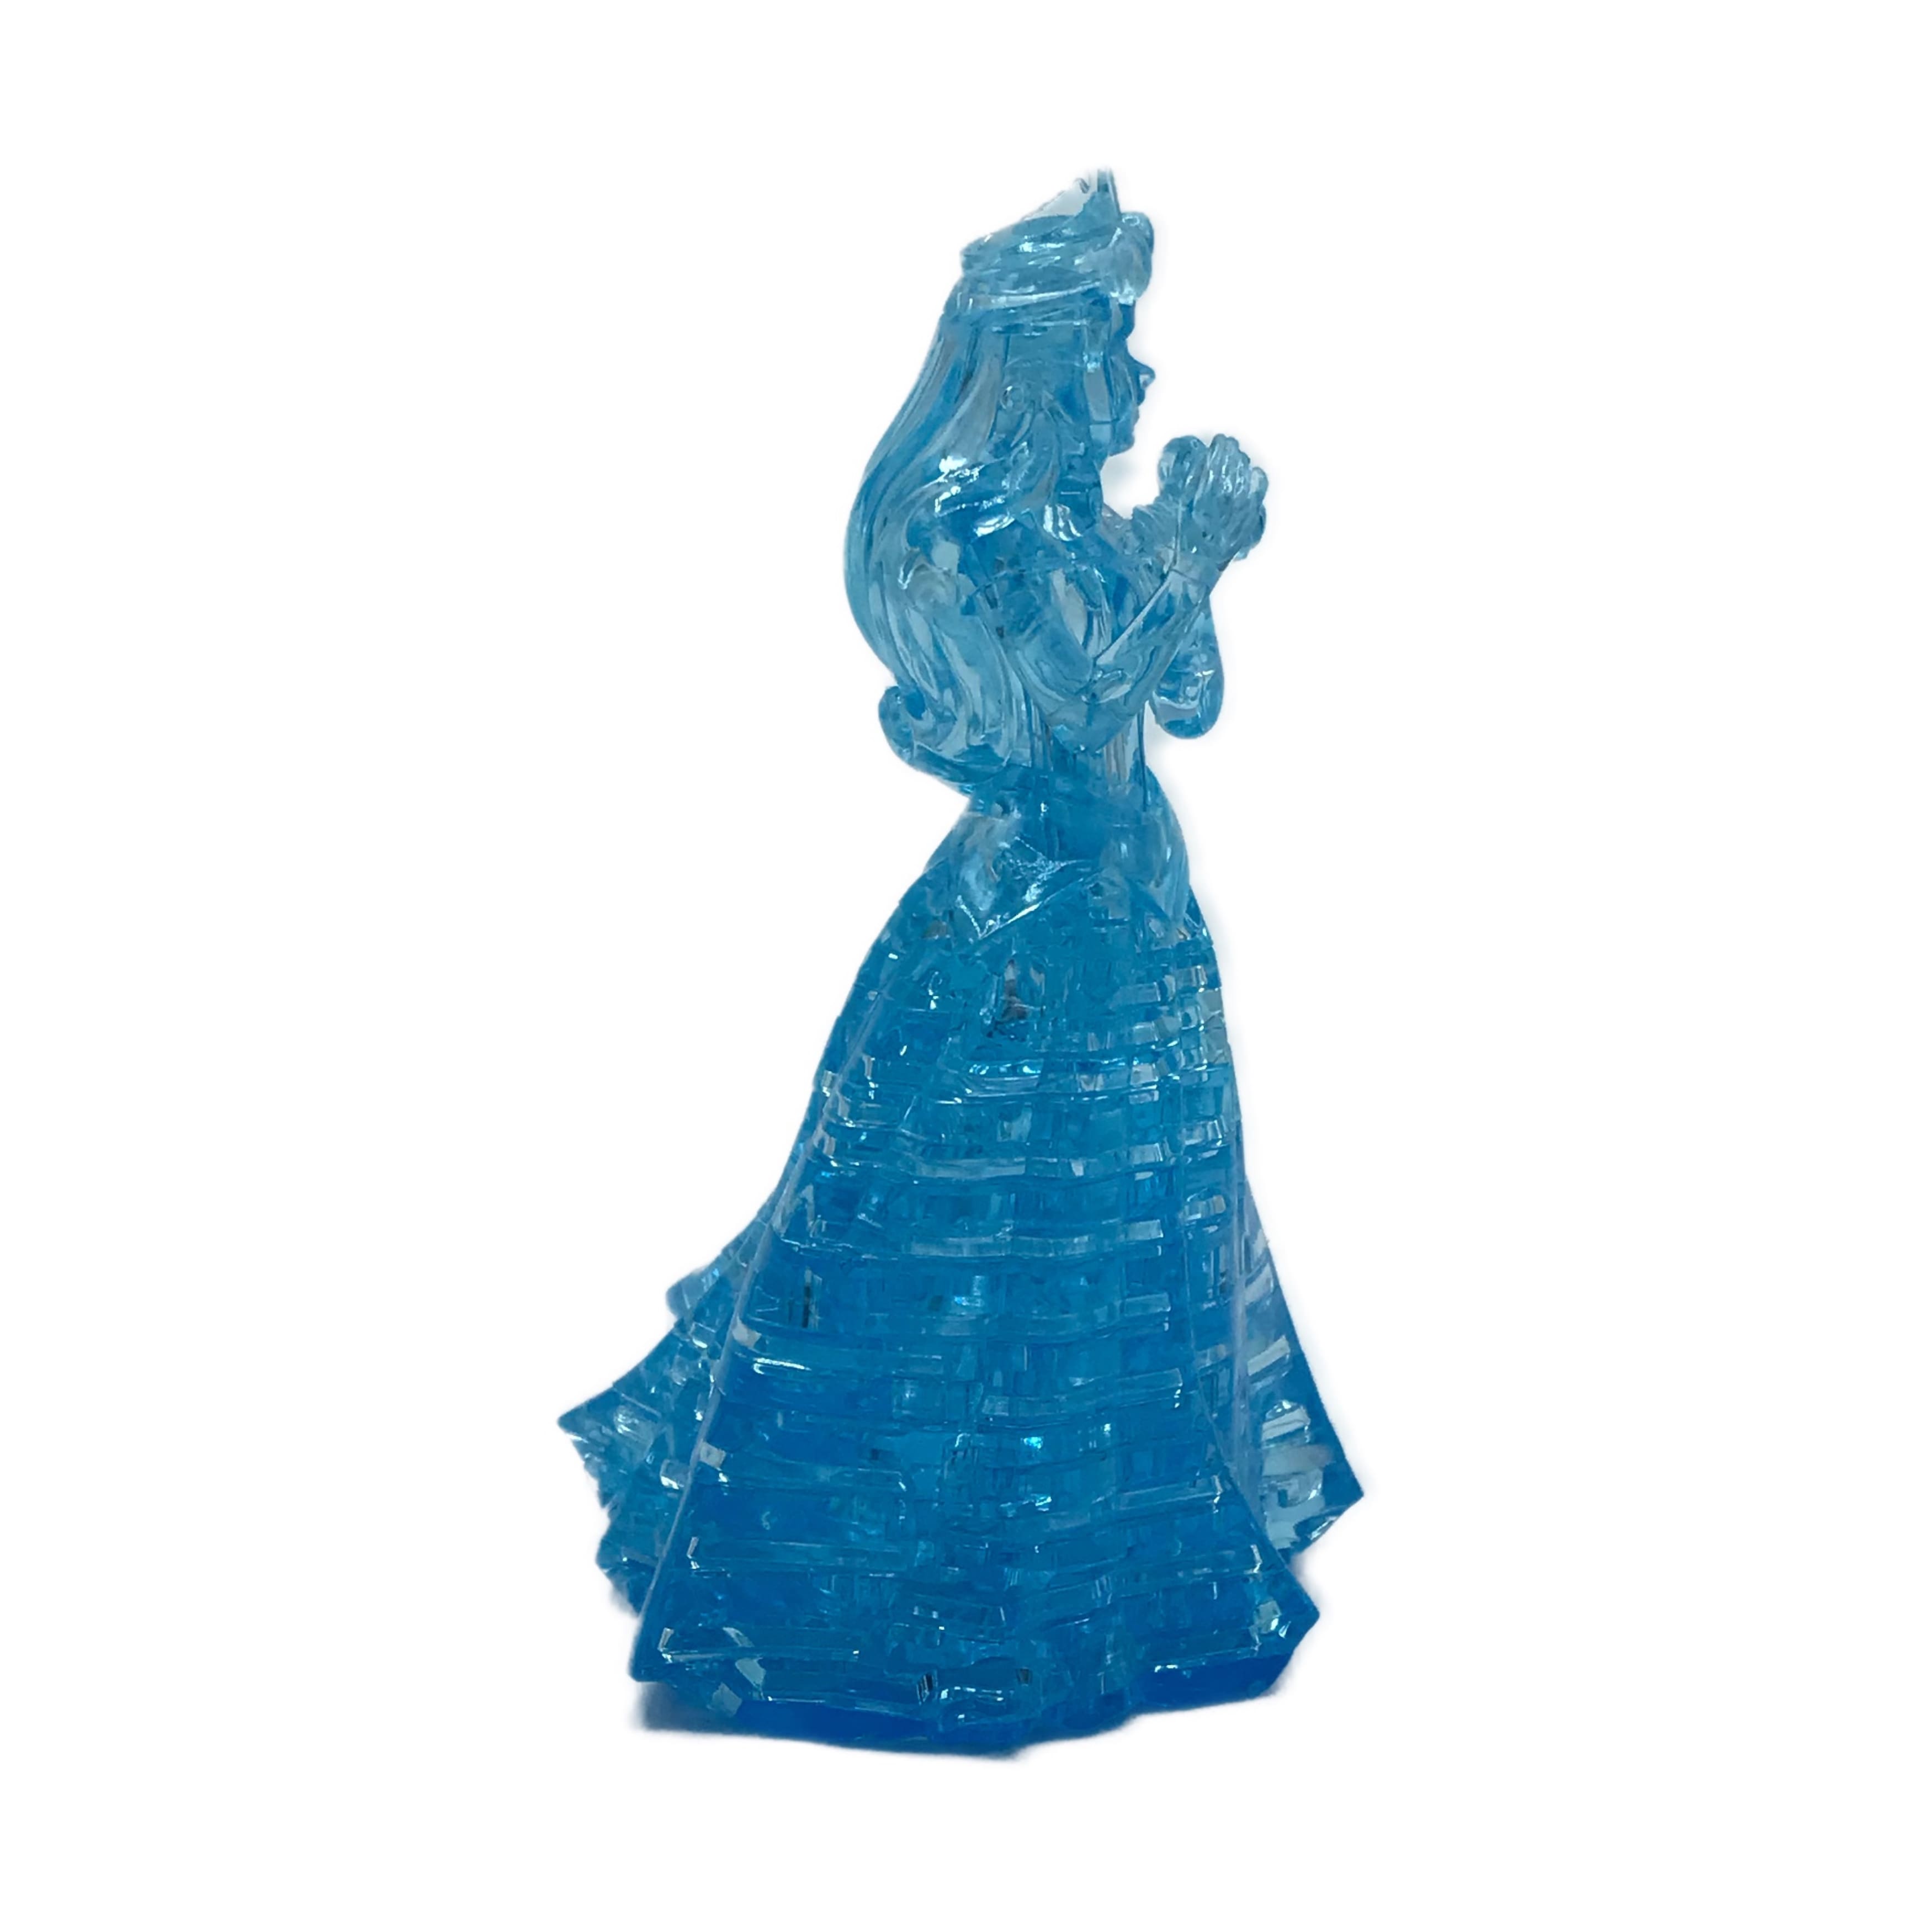 3D Crystal Puzzle - Disney Aurora (Aqua): 39 Pcs